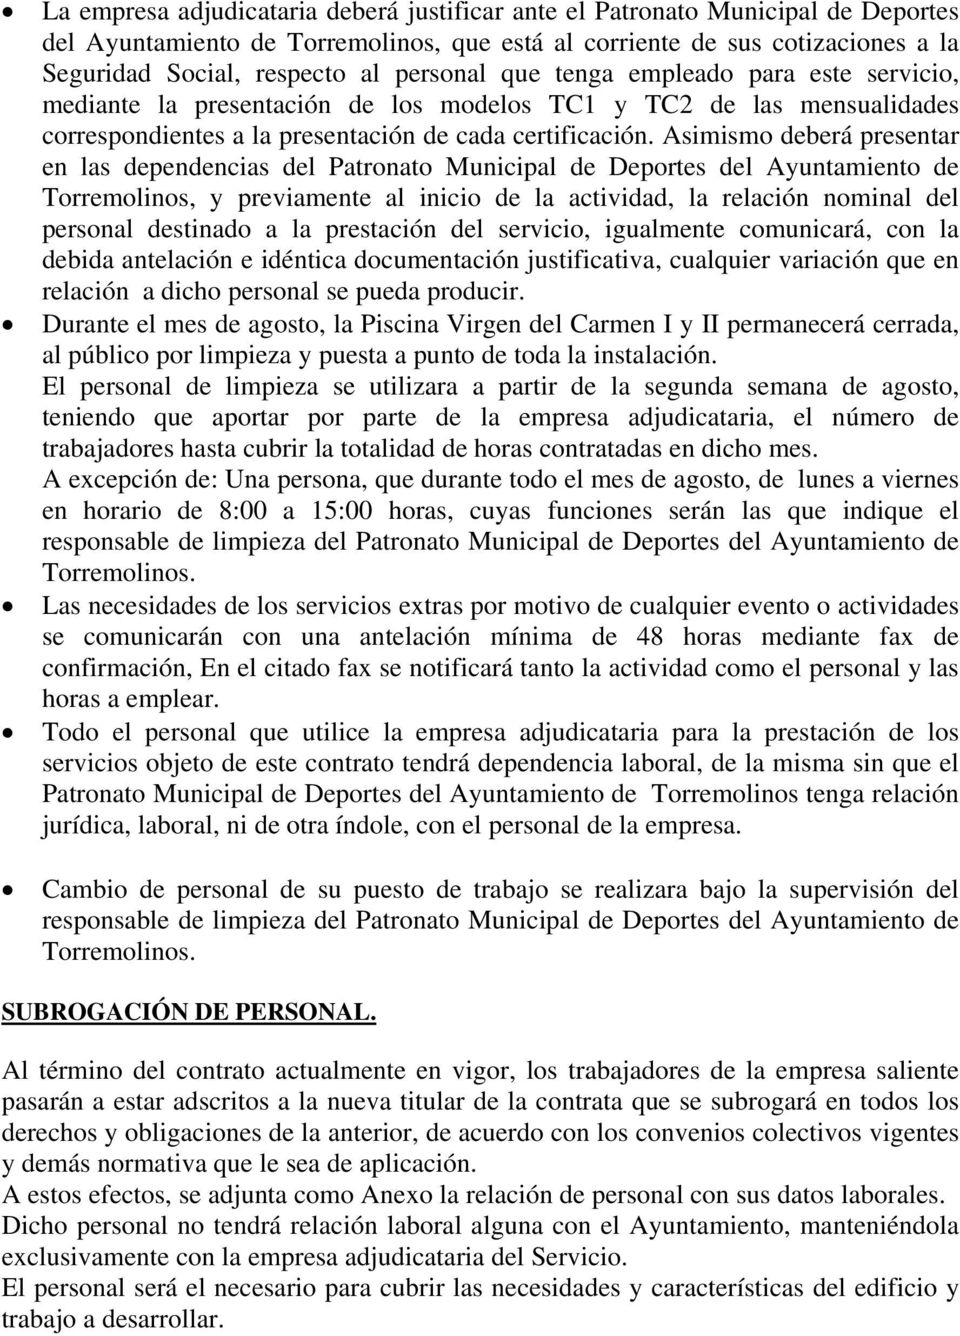 Asimismo deberá presentar en las dependencias del Patronato Municipal de Deportes del Ayuntamiento de Torremolinos, y previamente al inicio de la actividad, la relación nominal del personal destinado